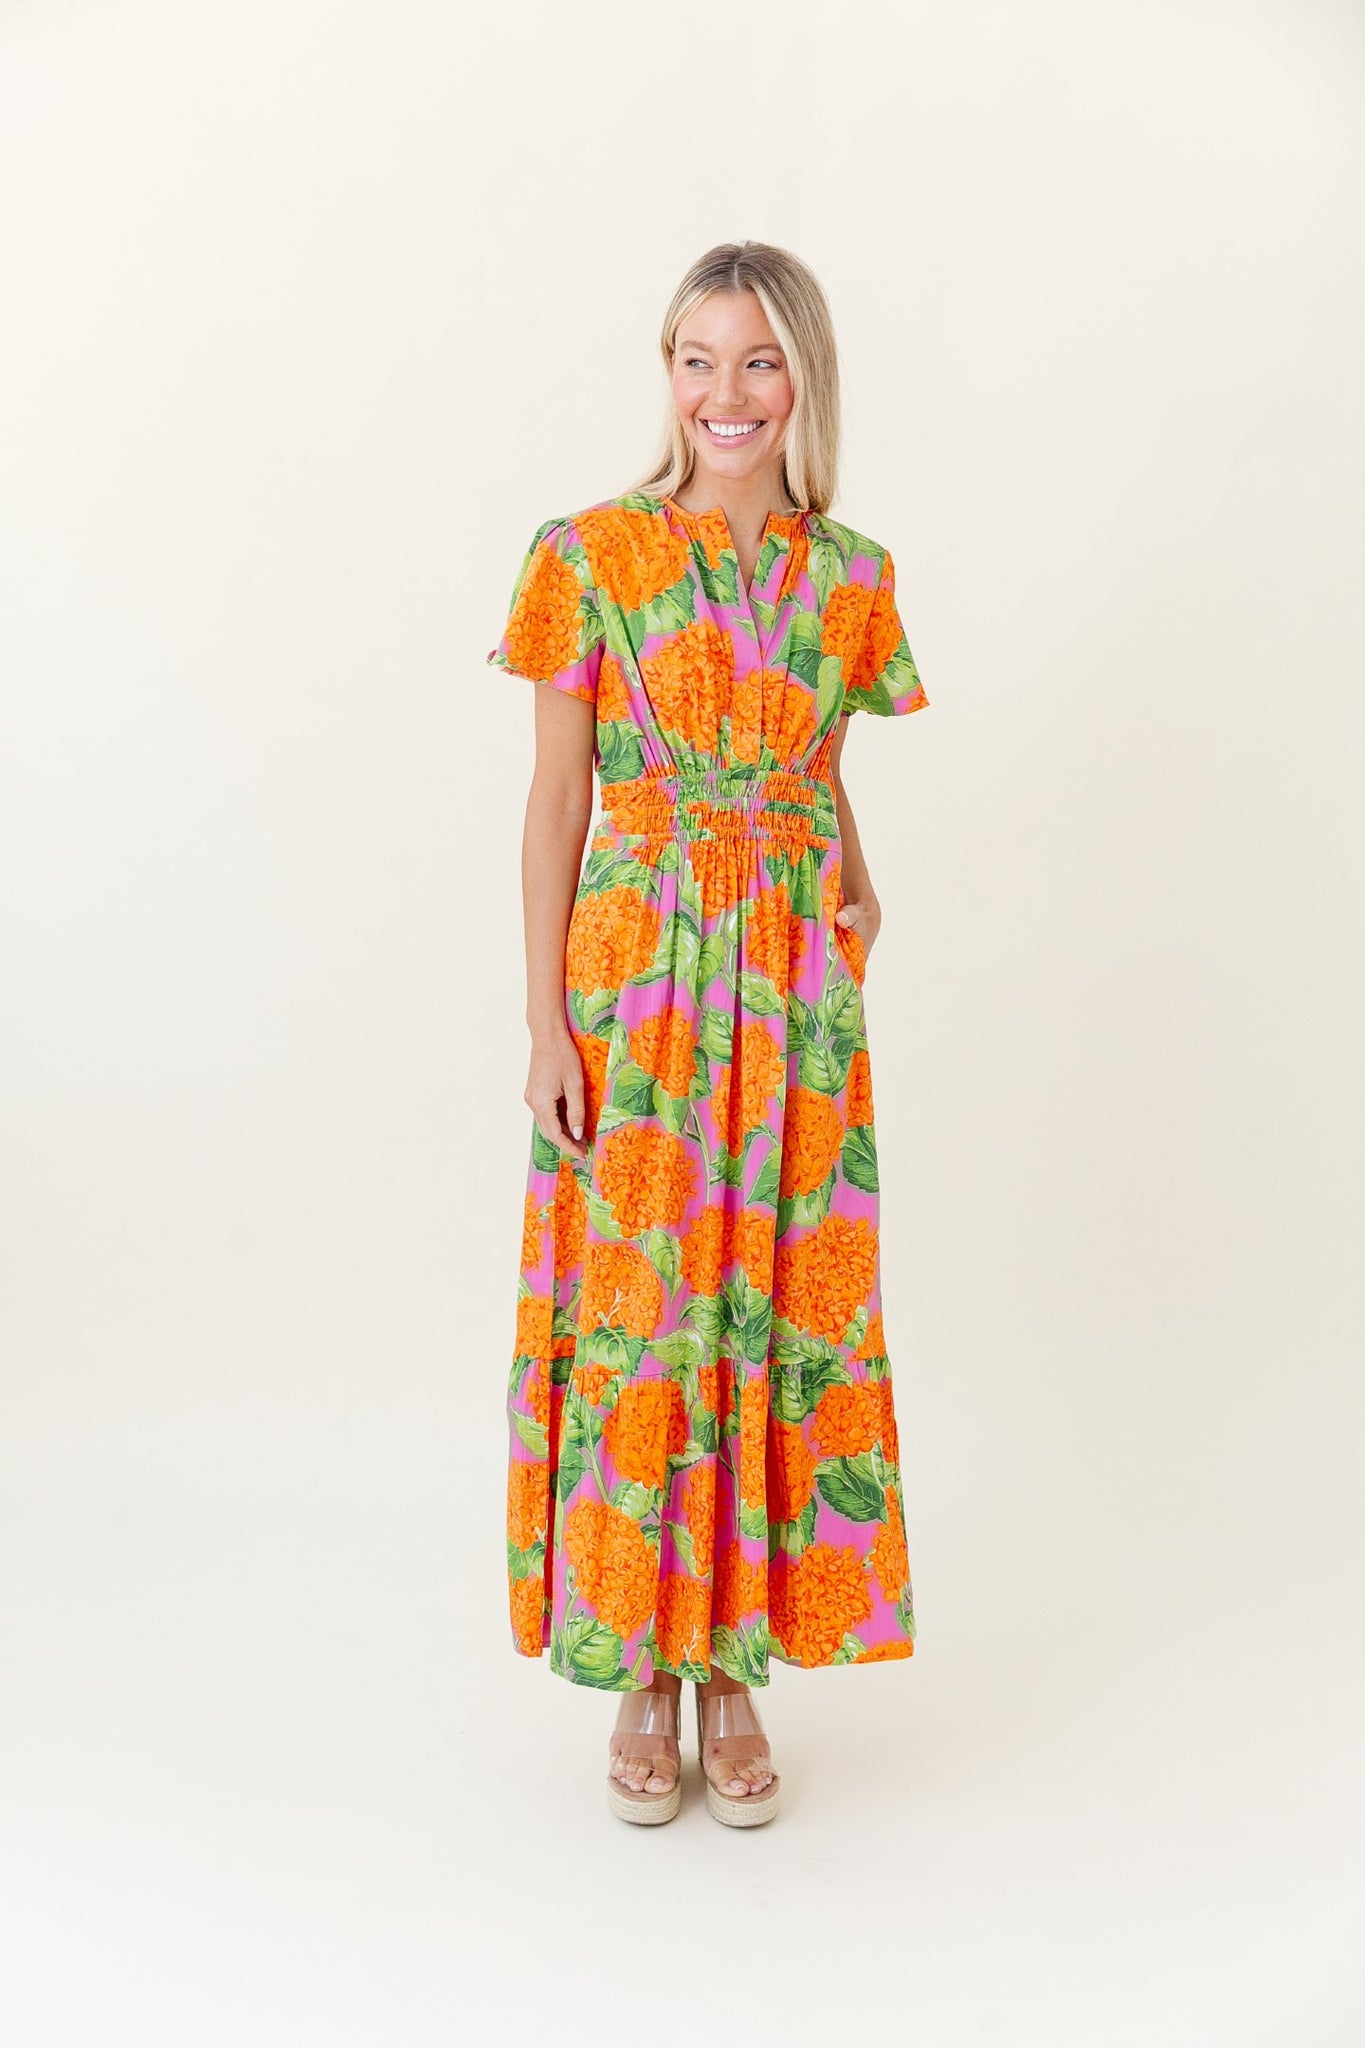 Eloise Dress in Tangelo Punch Hydrangea